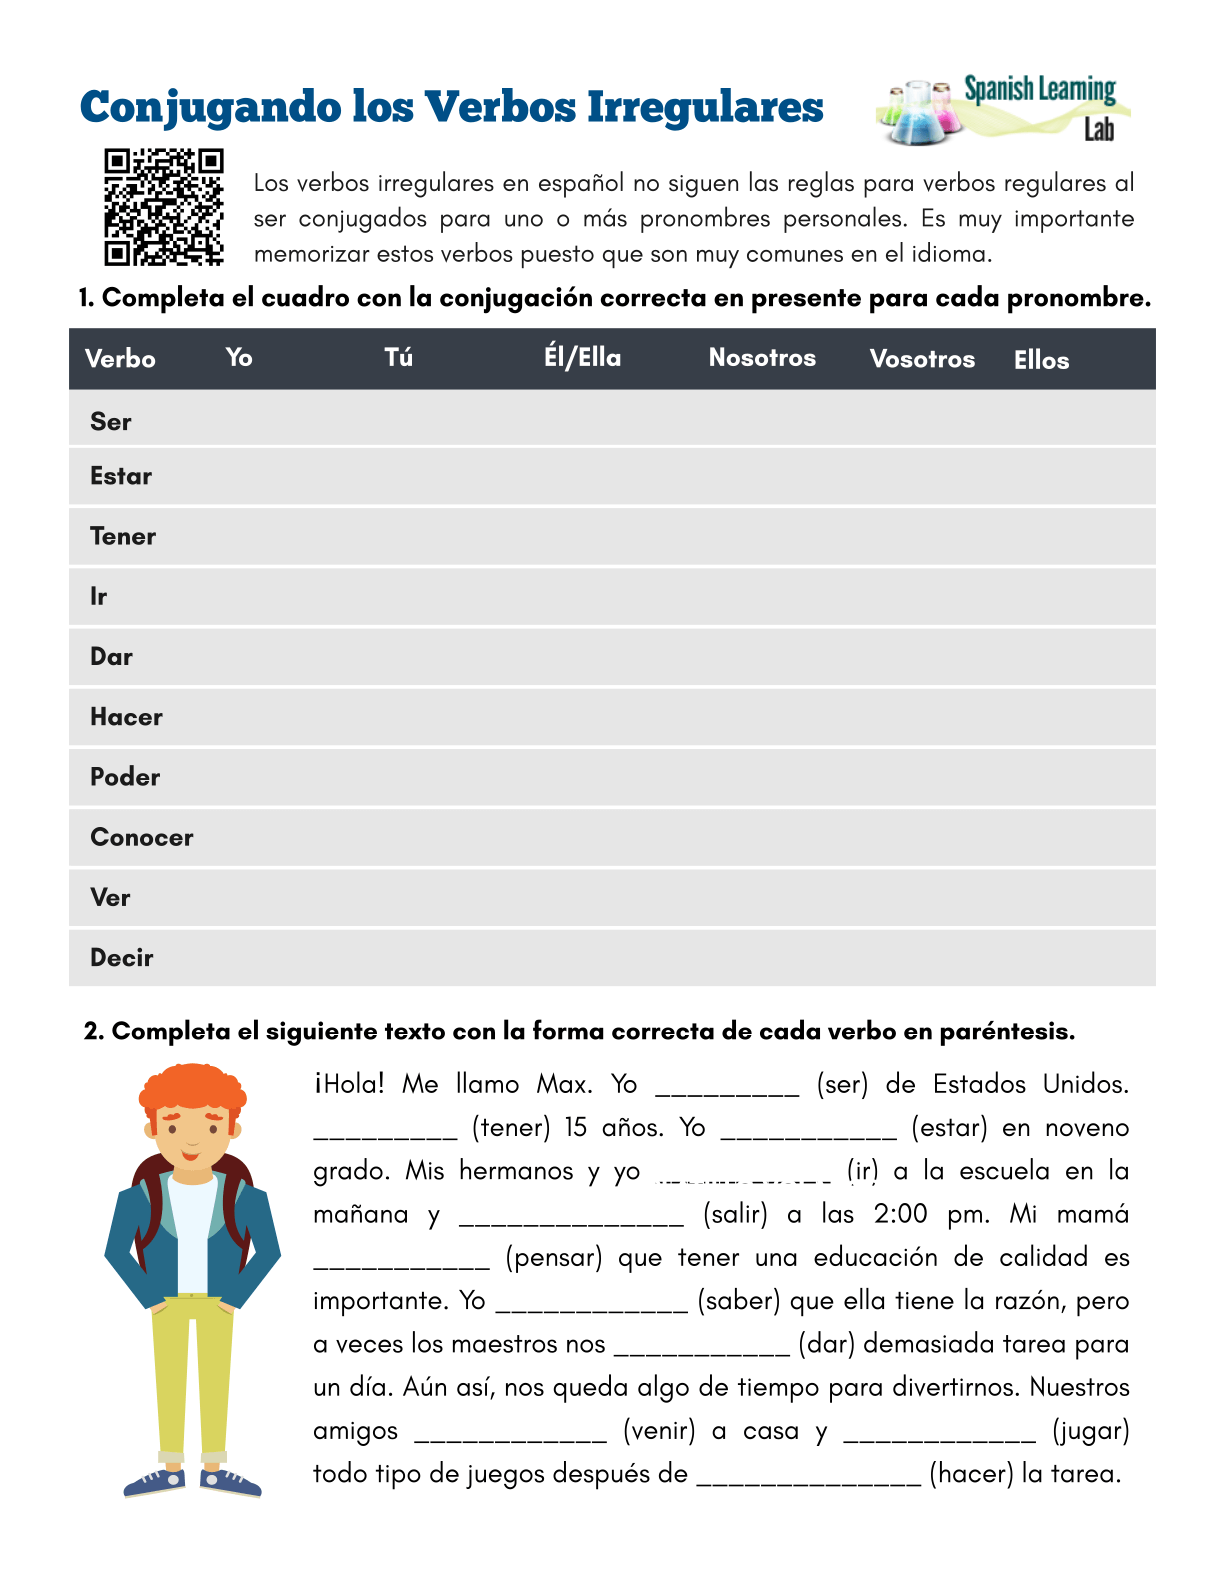 conjugando-los-verbos-irregulares-en-espa-ol-ejercicios-en-pdf